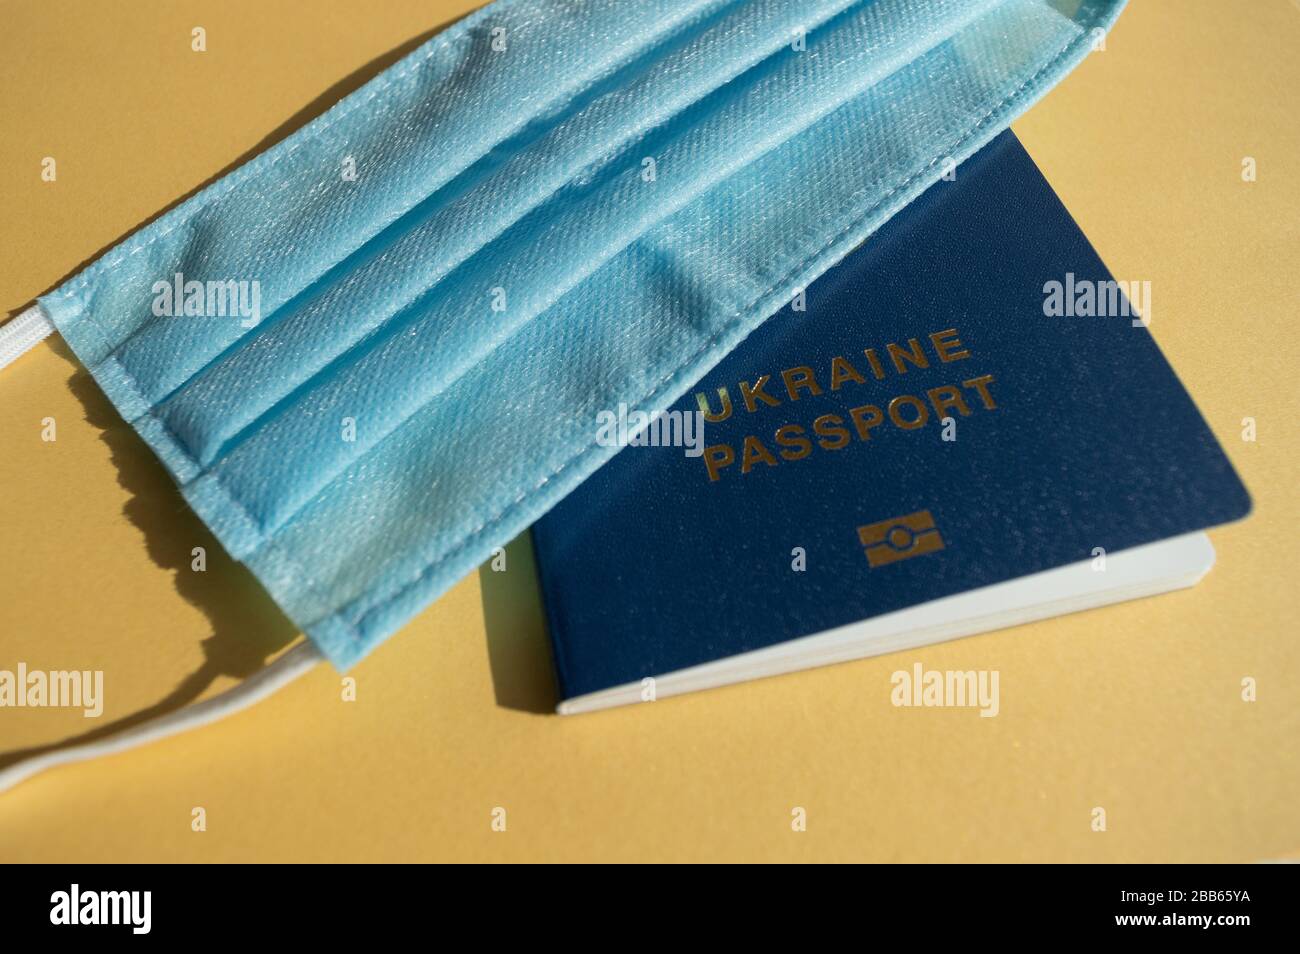 Passeport Forein de l'Ukraine sous des masques médicaux bleu clair sur les milieux jaune vif contre le virus covid-2019. Concept de soins de santé, arrêt Banque D'Images